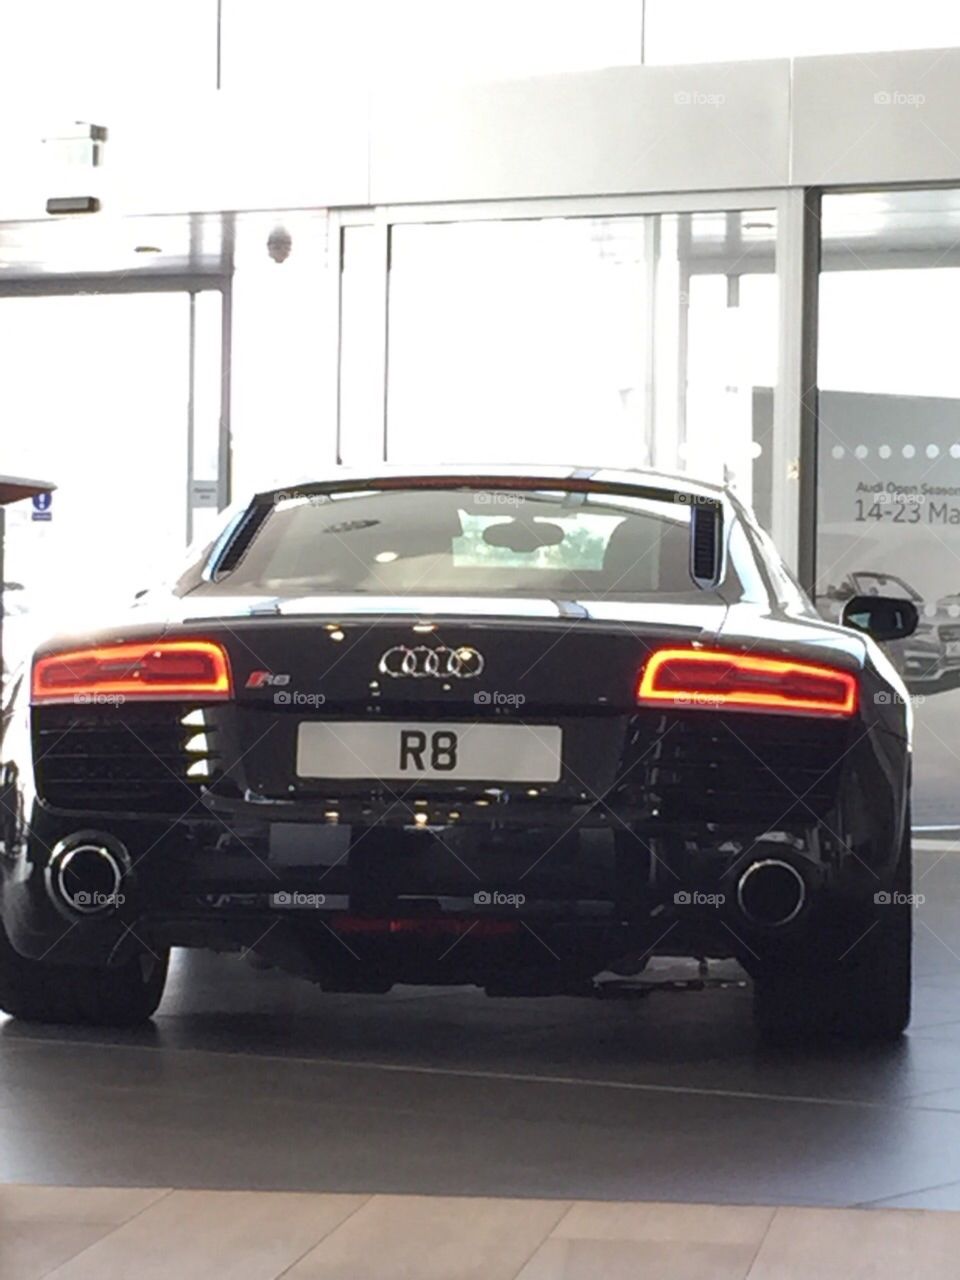 R8 Audi in showroom